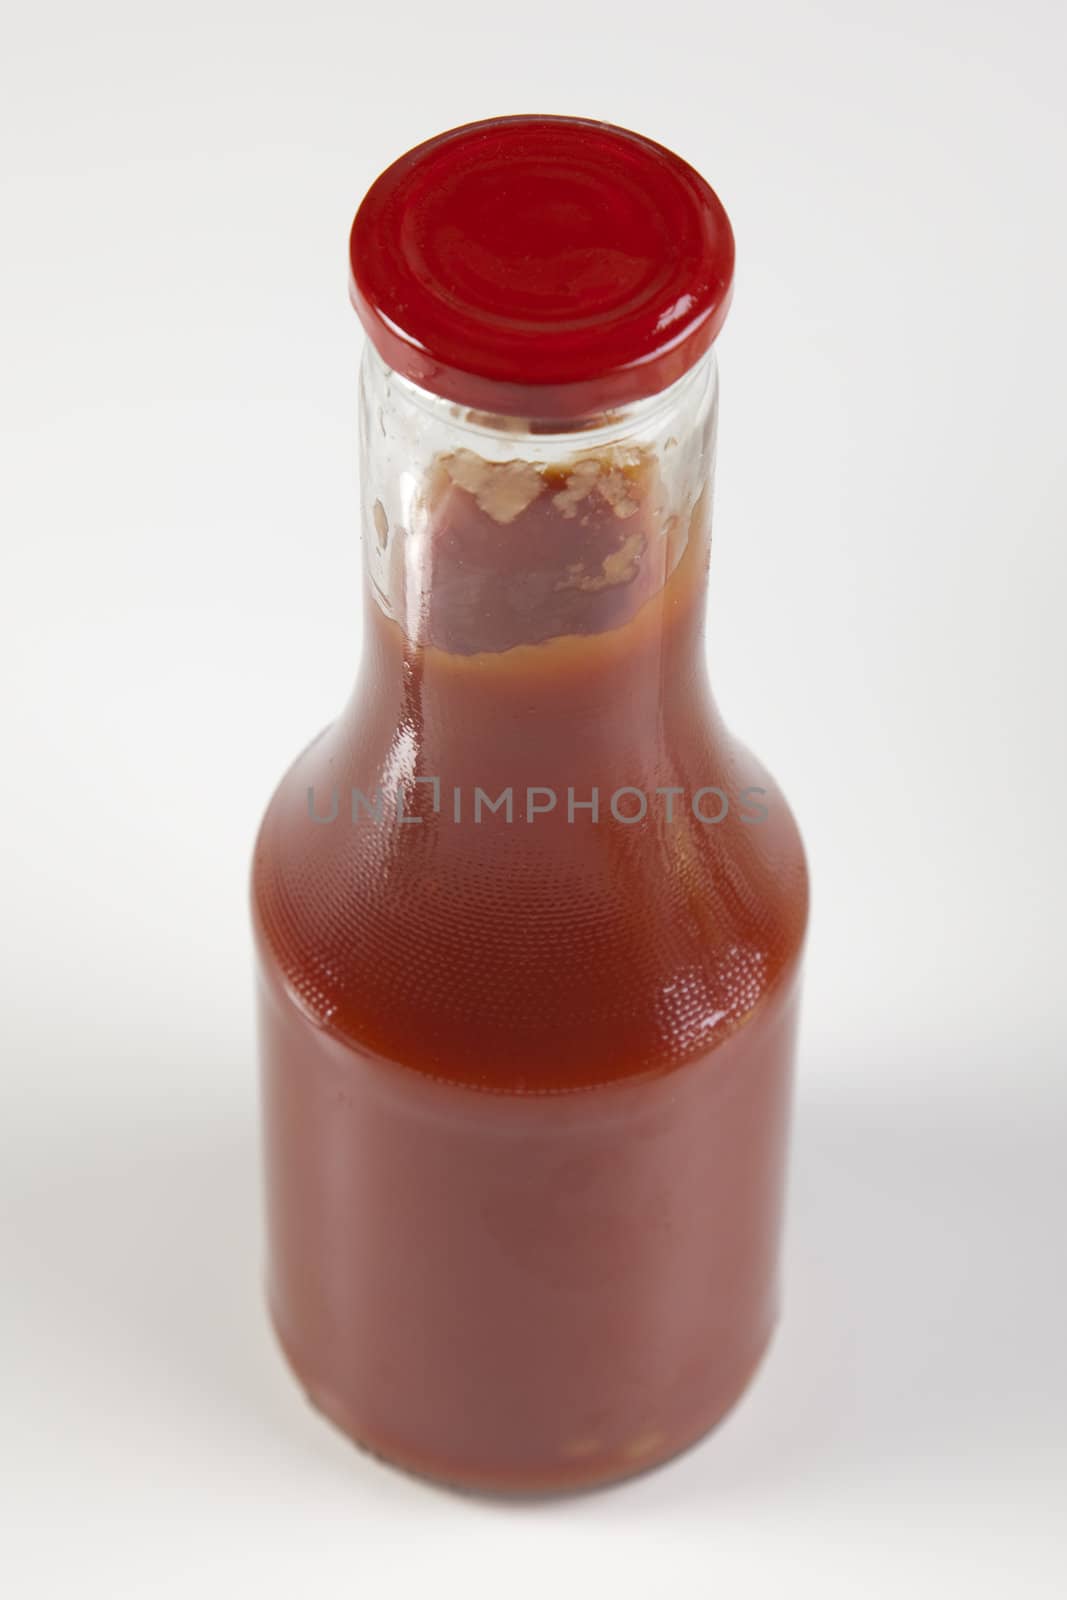 Ketchup by shiffti